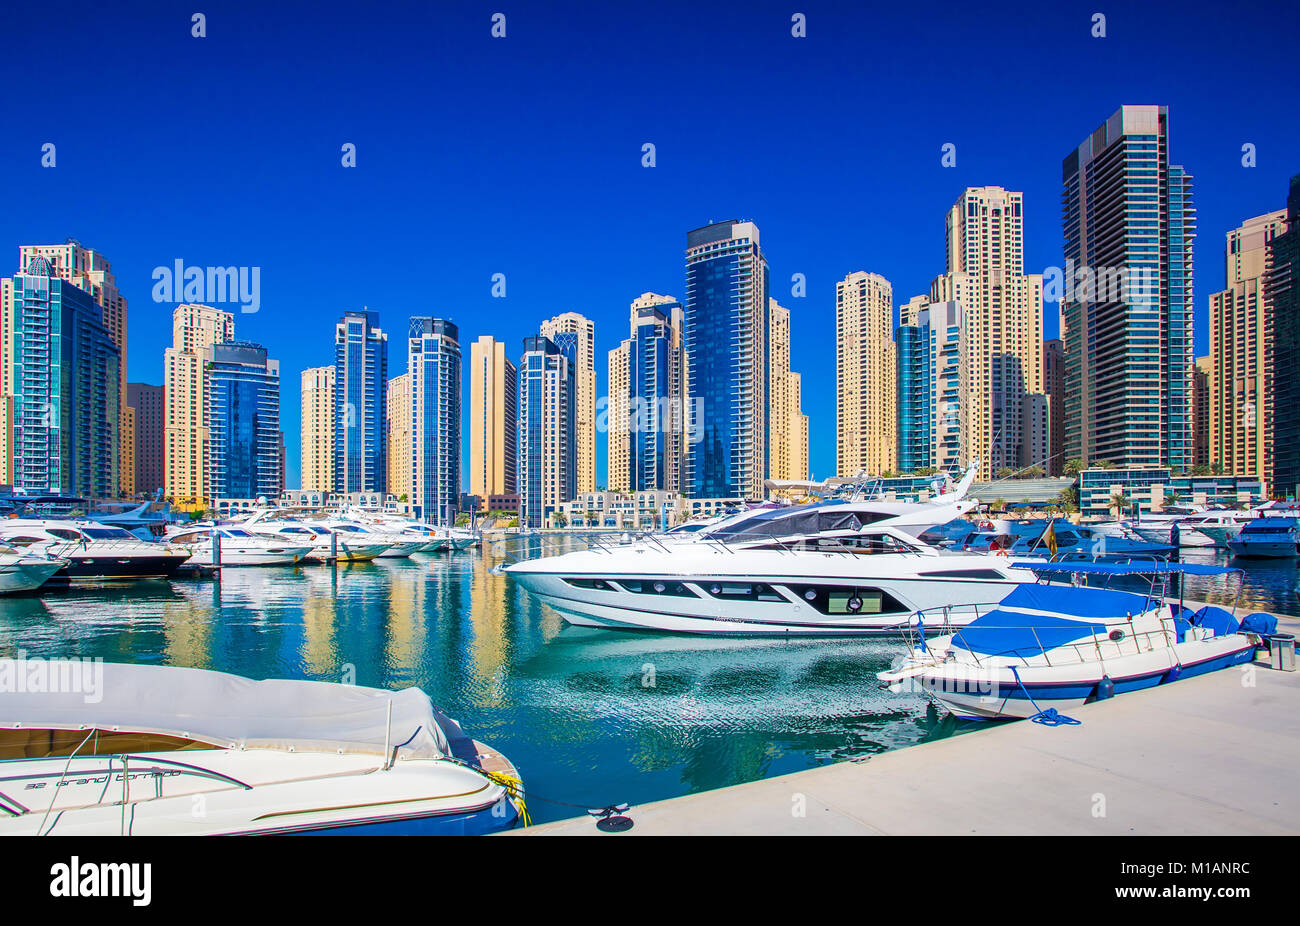 Dubai sunny cityscape. Cielo blu chiaro su grattacieli. Yacht di lusso in marina nel centro cittadino di Dubai. Foto Stock